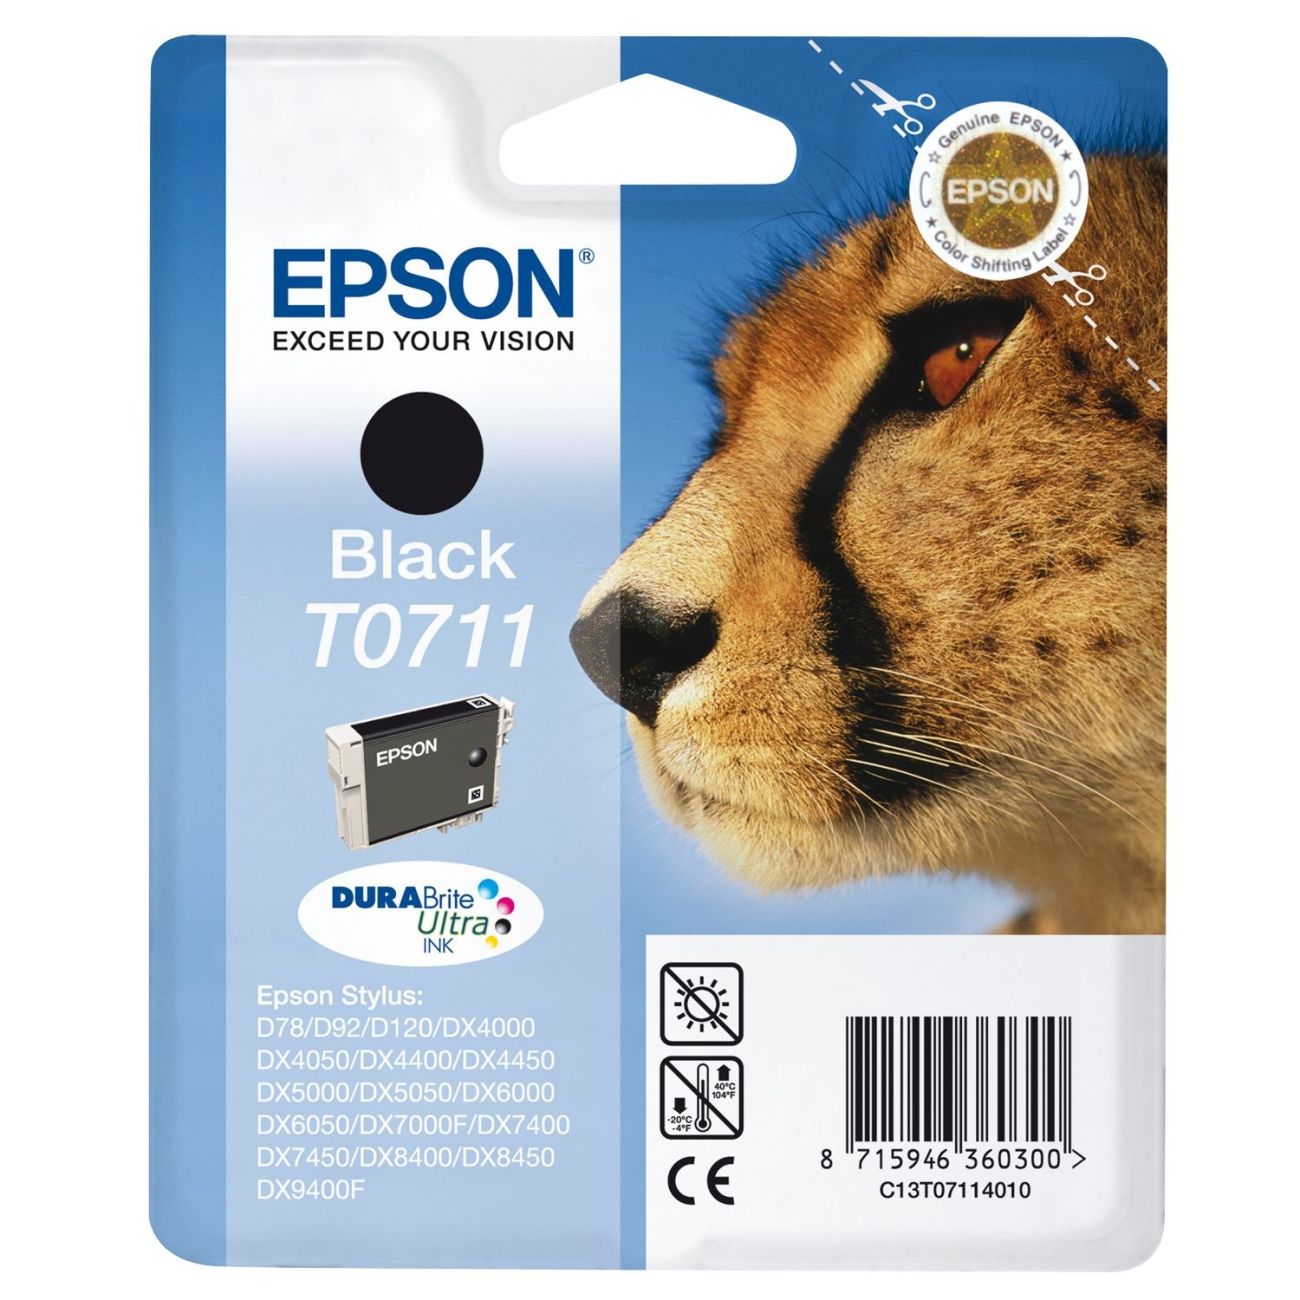 Epson-0711-negro-tinta-original